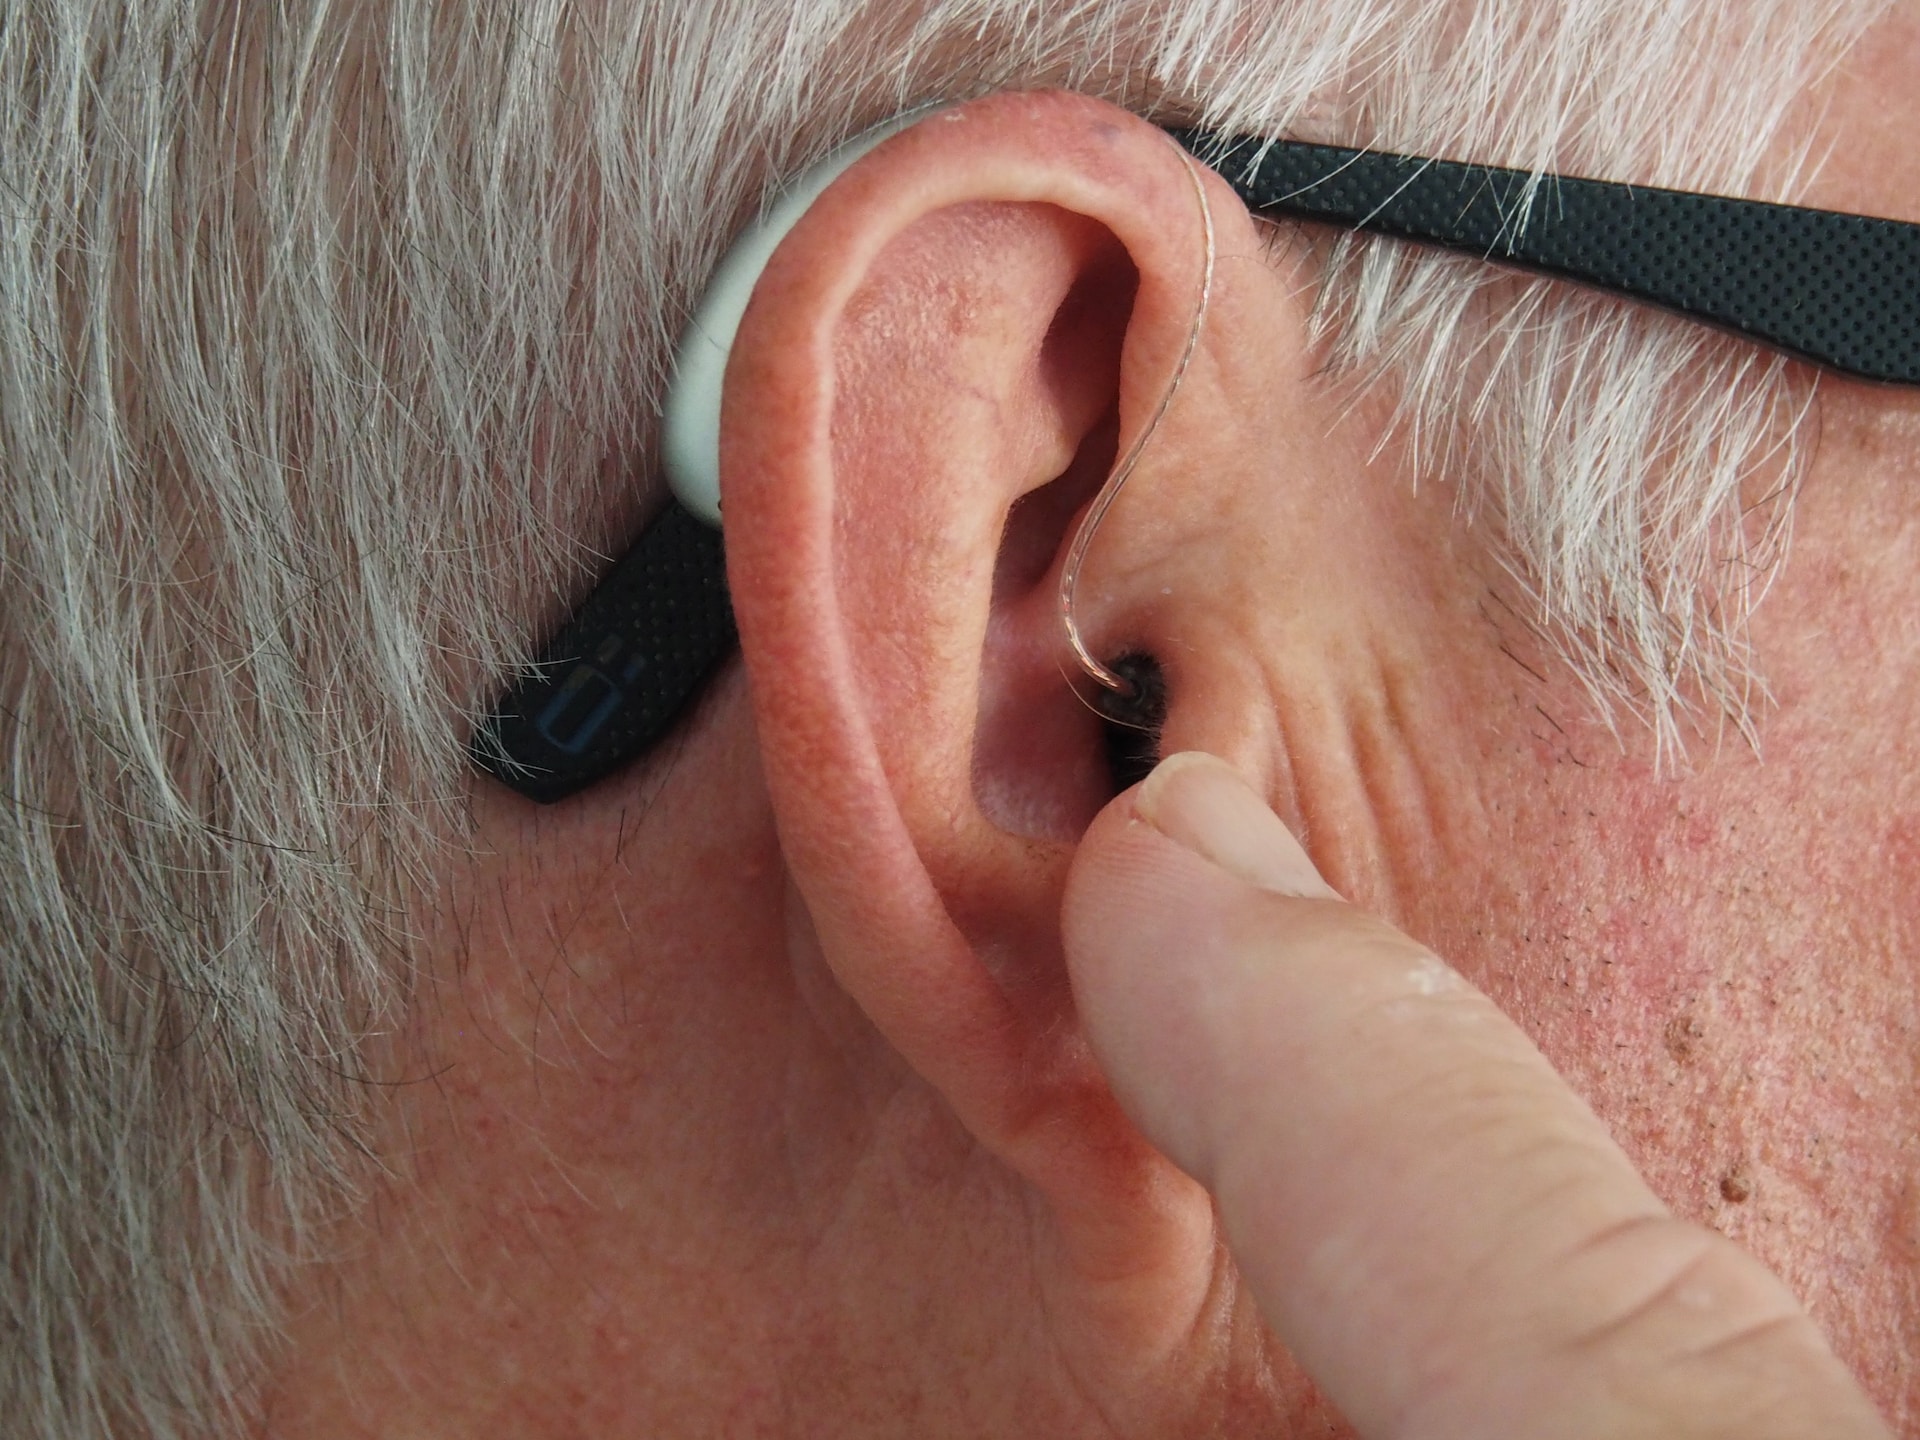 Использование слуховых аппаратов снижает риск развития деменции при нарушениях слуха